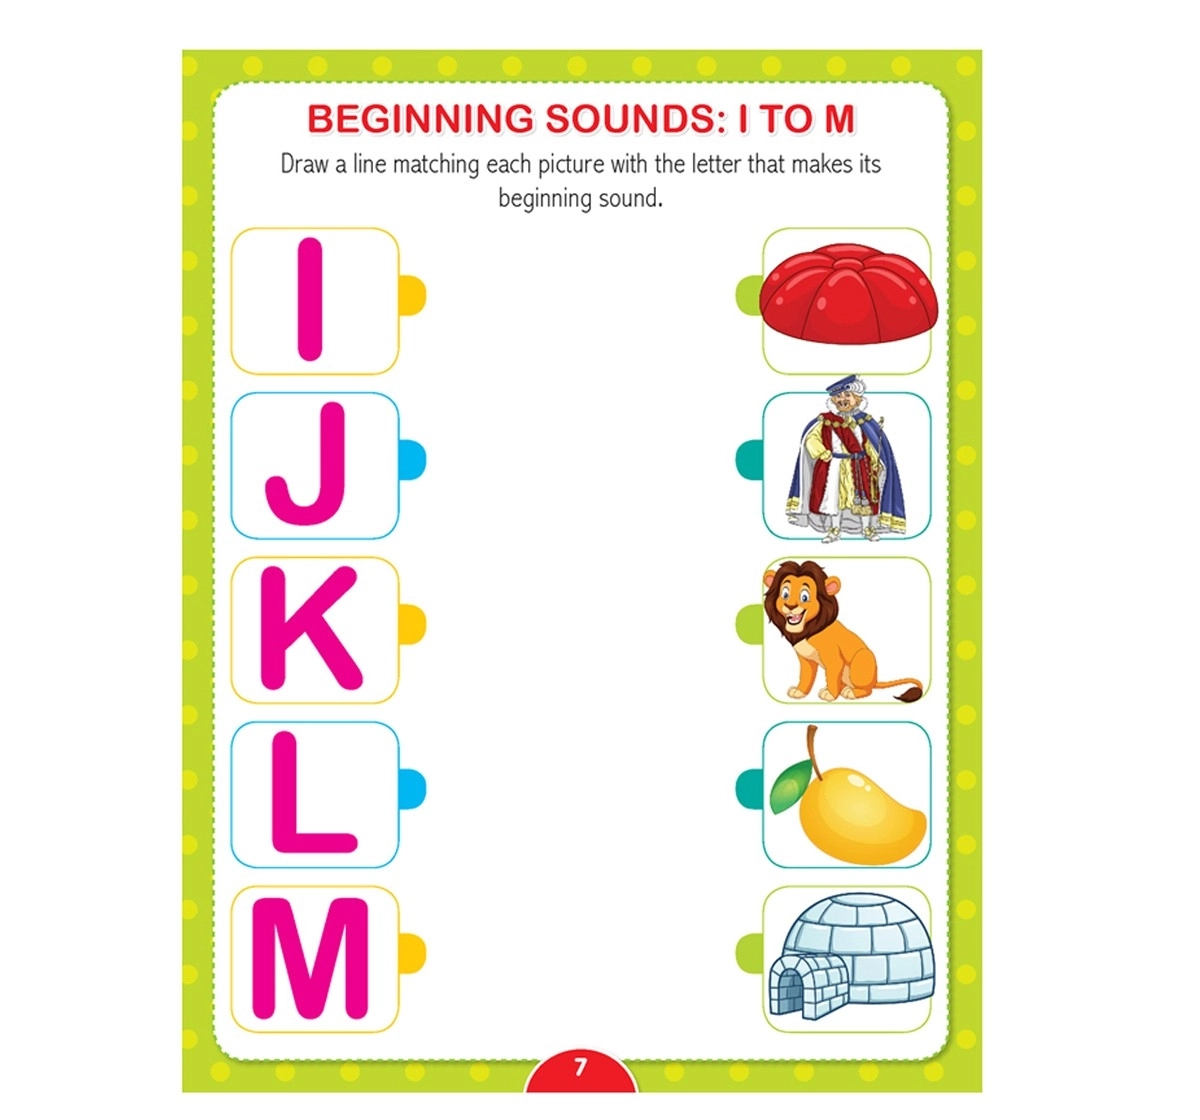 Dreamland Paperback Kinder Garden English Worksheets Books for Kids 4Y+, Multicolour